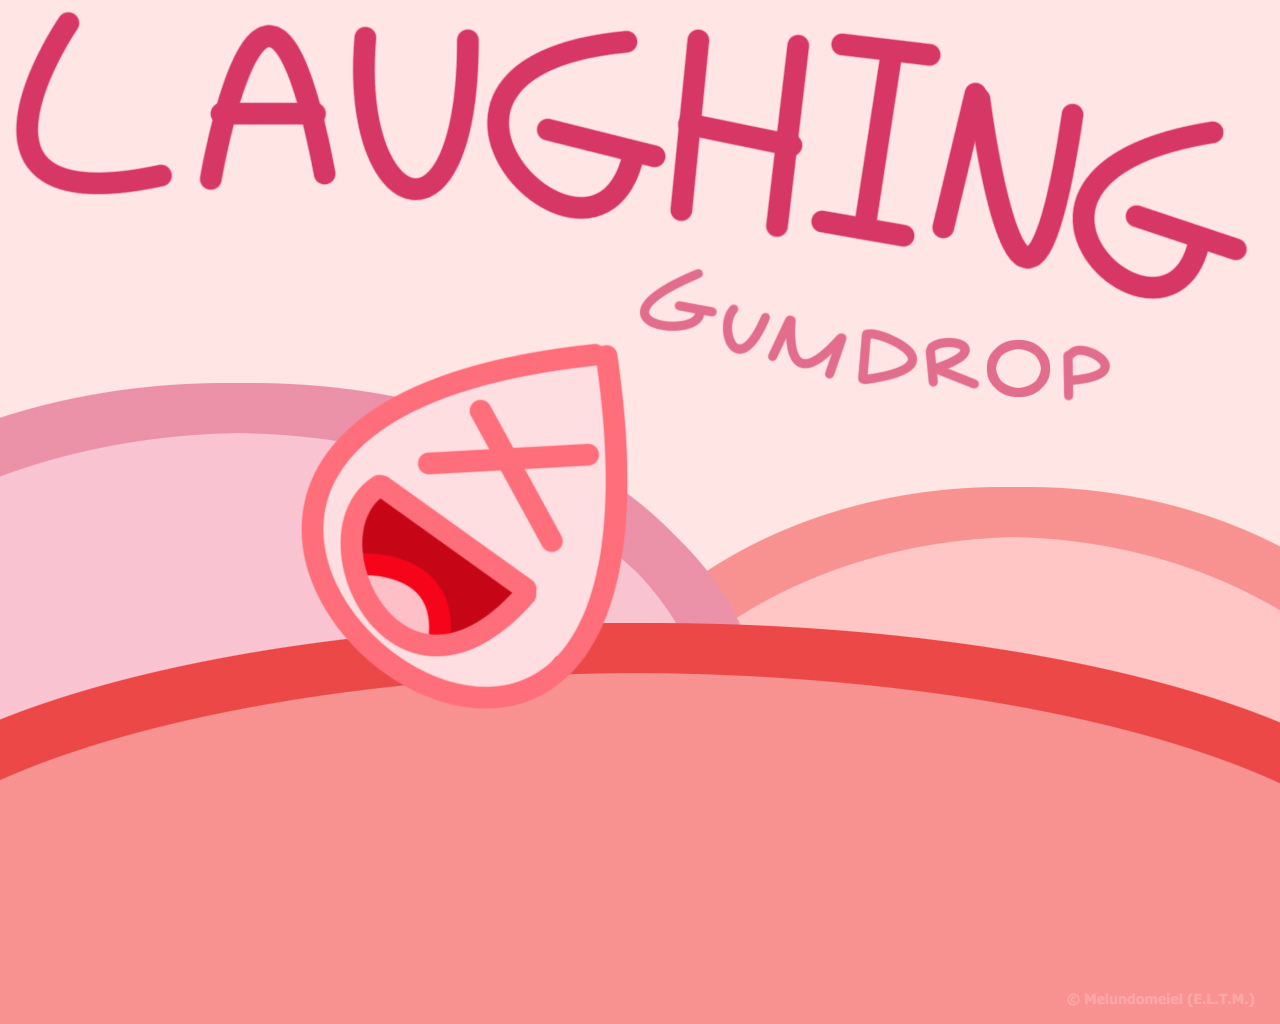 Laughing Gumdrop by Melundomeiel